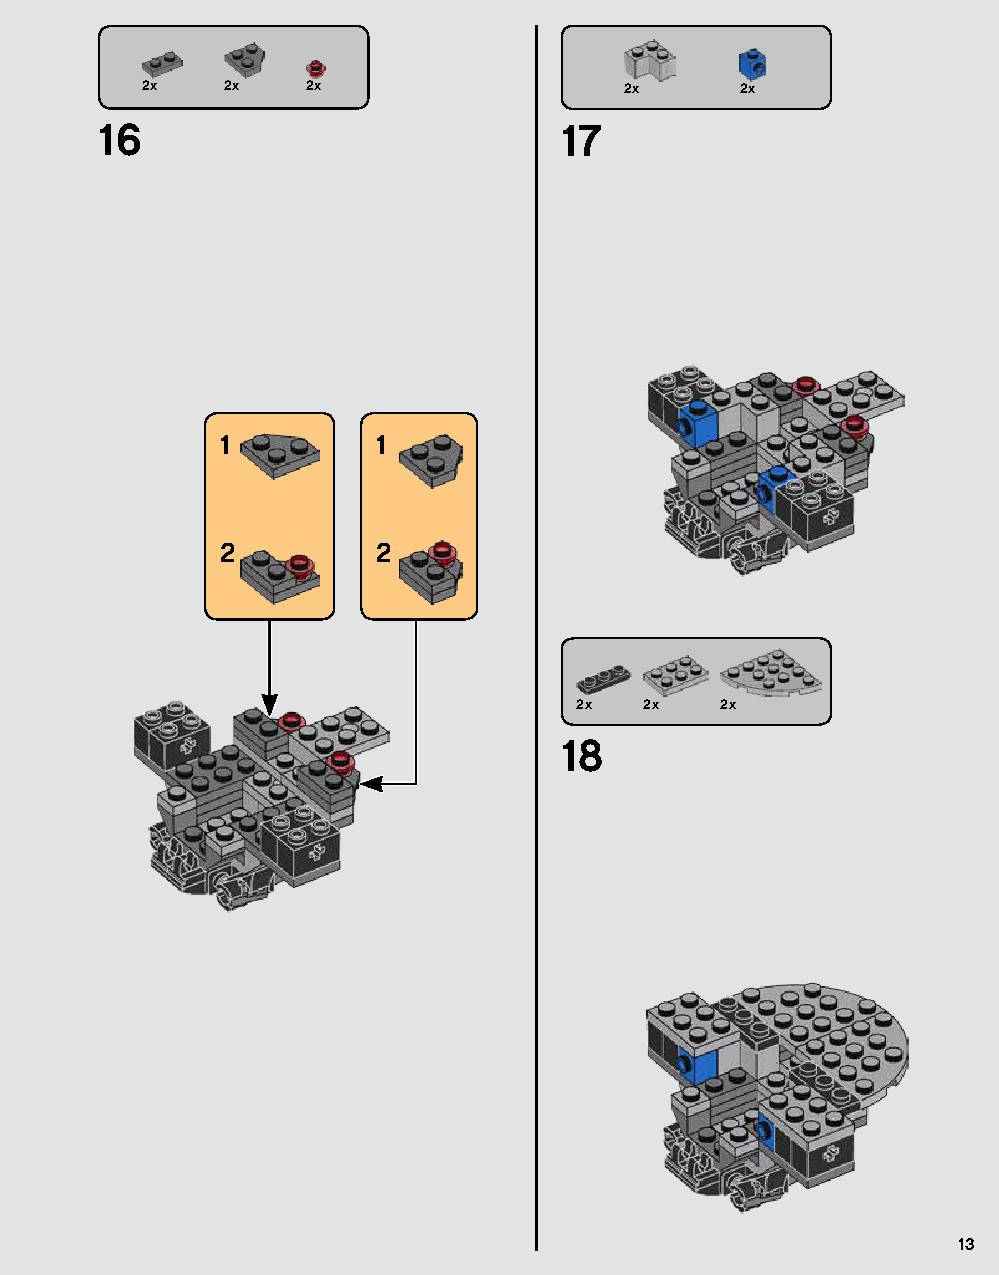 ダース・ベイダーの城 75251 レゴの商品情報 レゴの説明書・組立方法 13 page